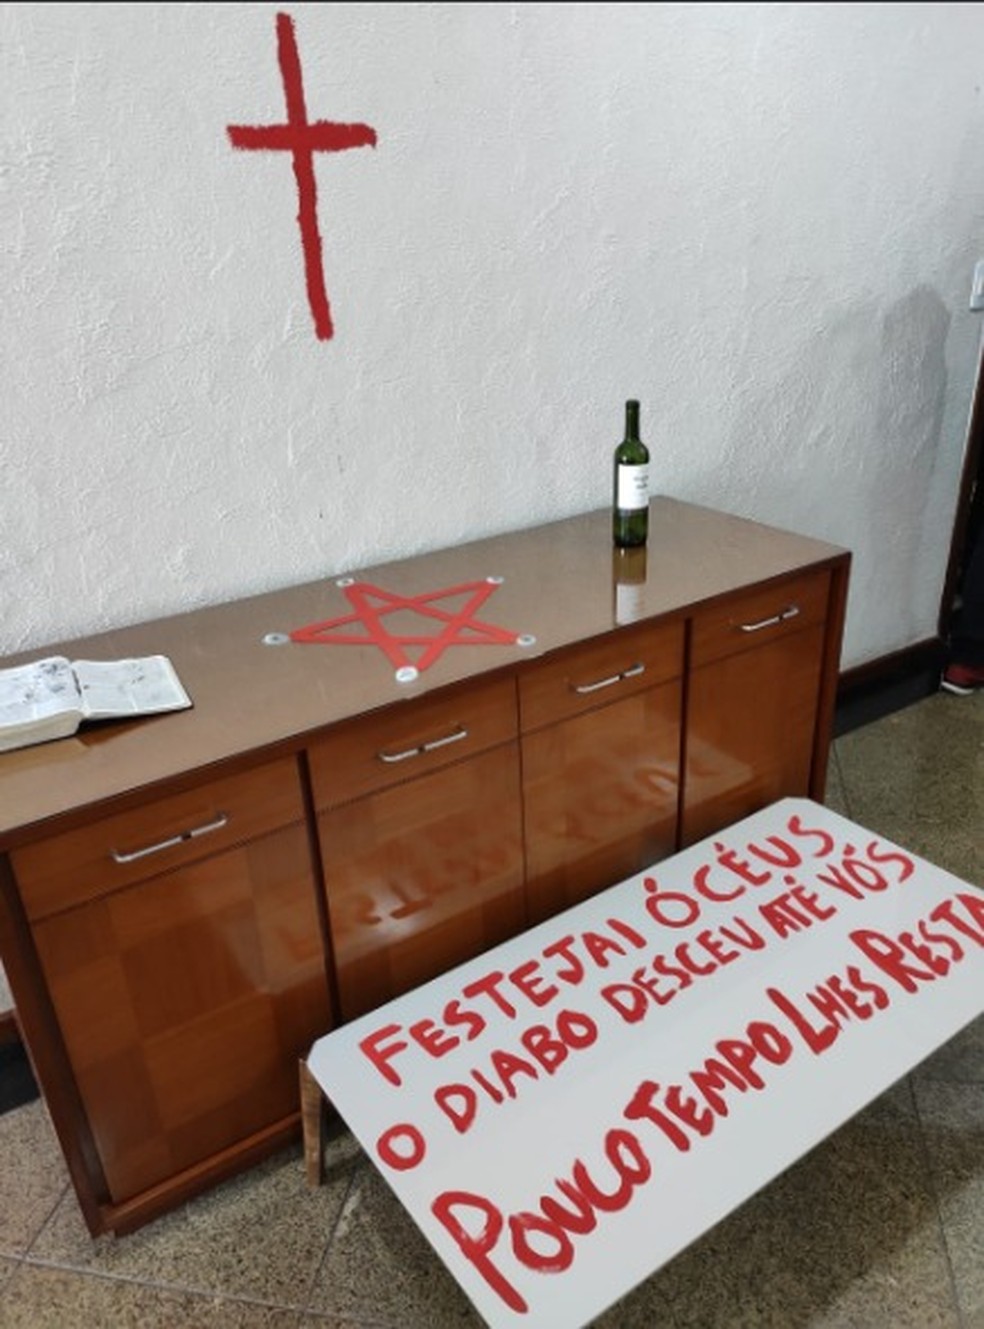 Policiais encontram símbolos religiosos em apartamento de jovem que matou os pais em Vila Velha, no ES — Foto: Reprodução/TV Gazeta